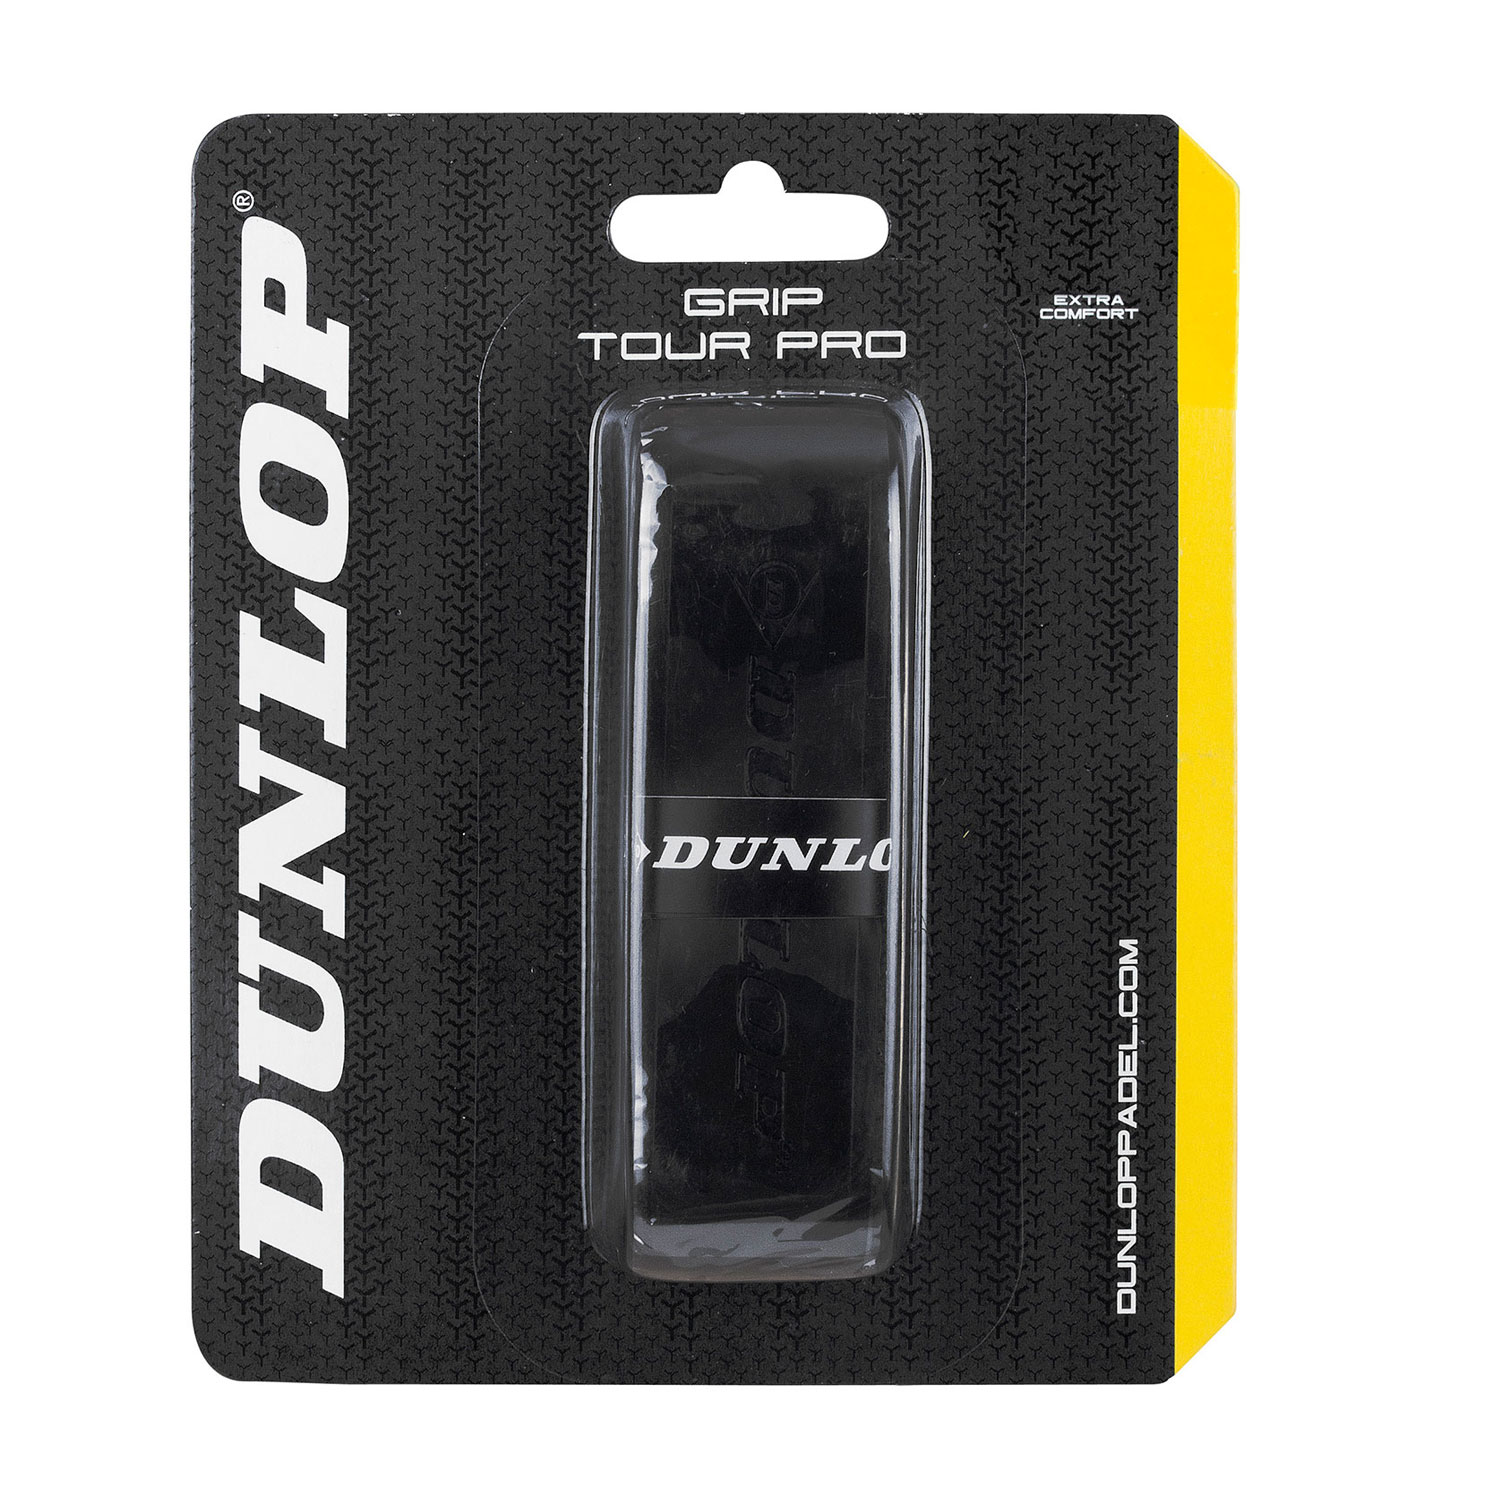 Dunlop Tour Pro Grip - Black